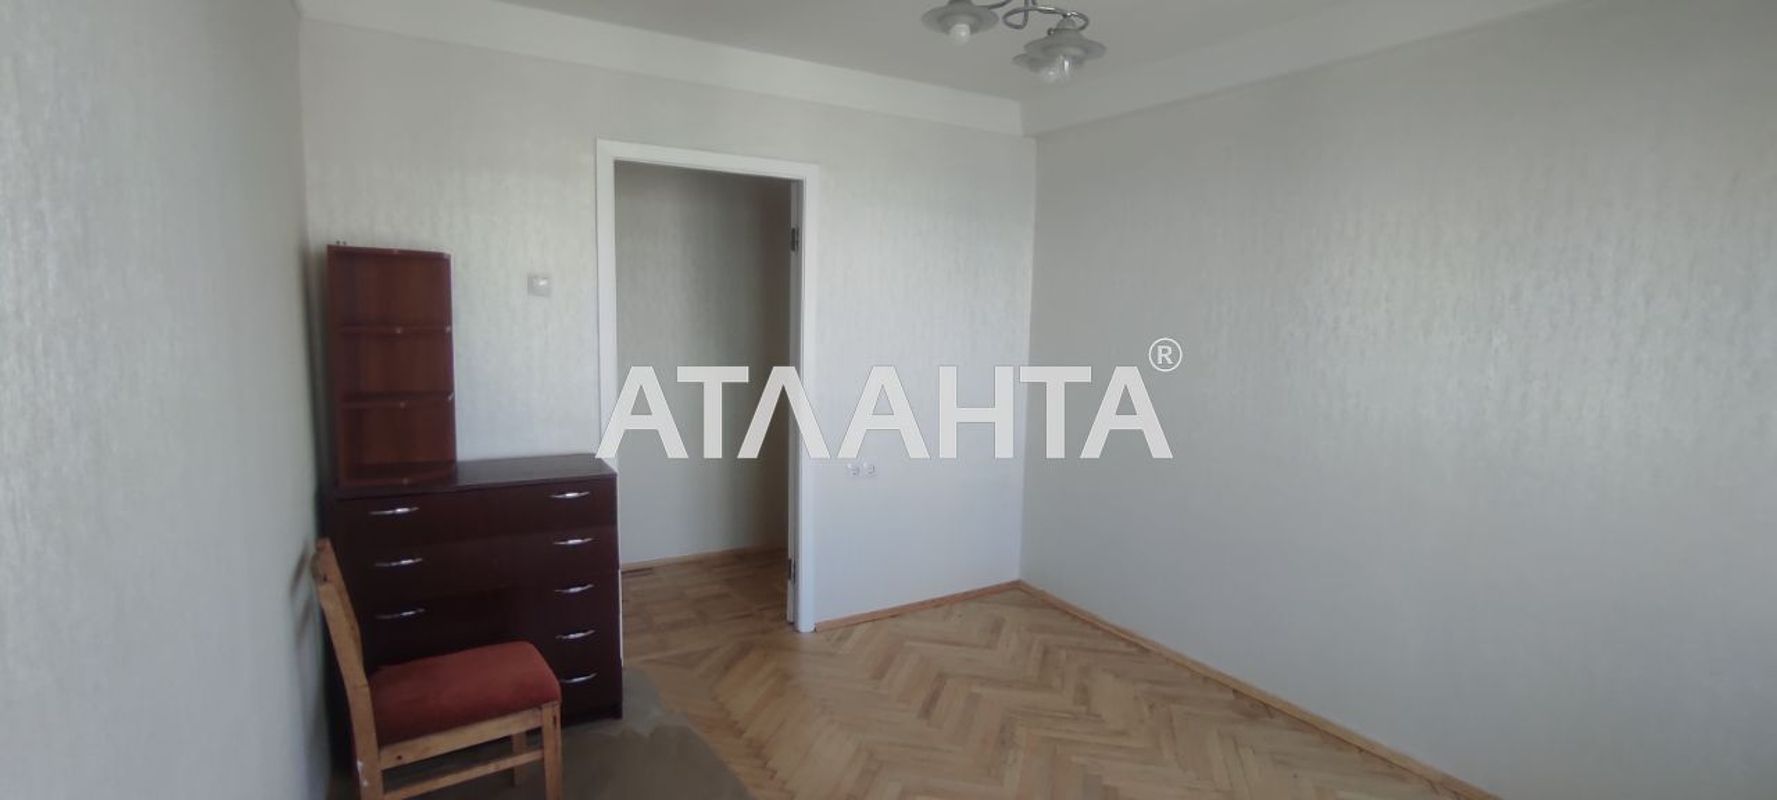 3 кімнатна квартира під постанови на Харківському шосе  21